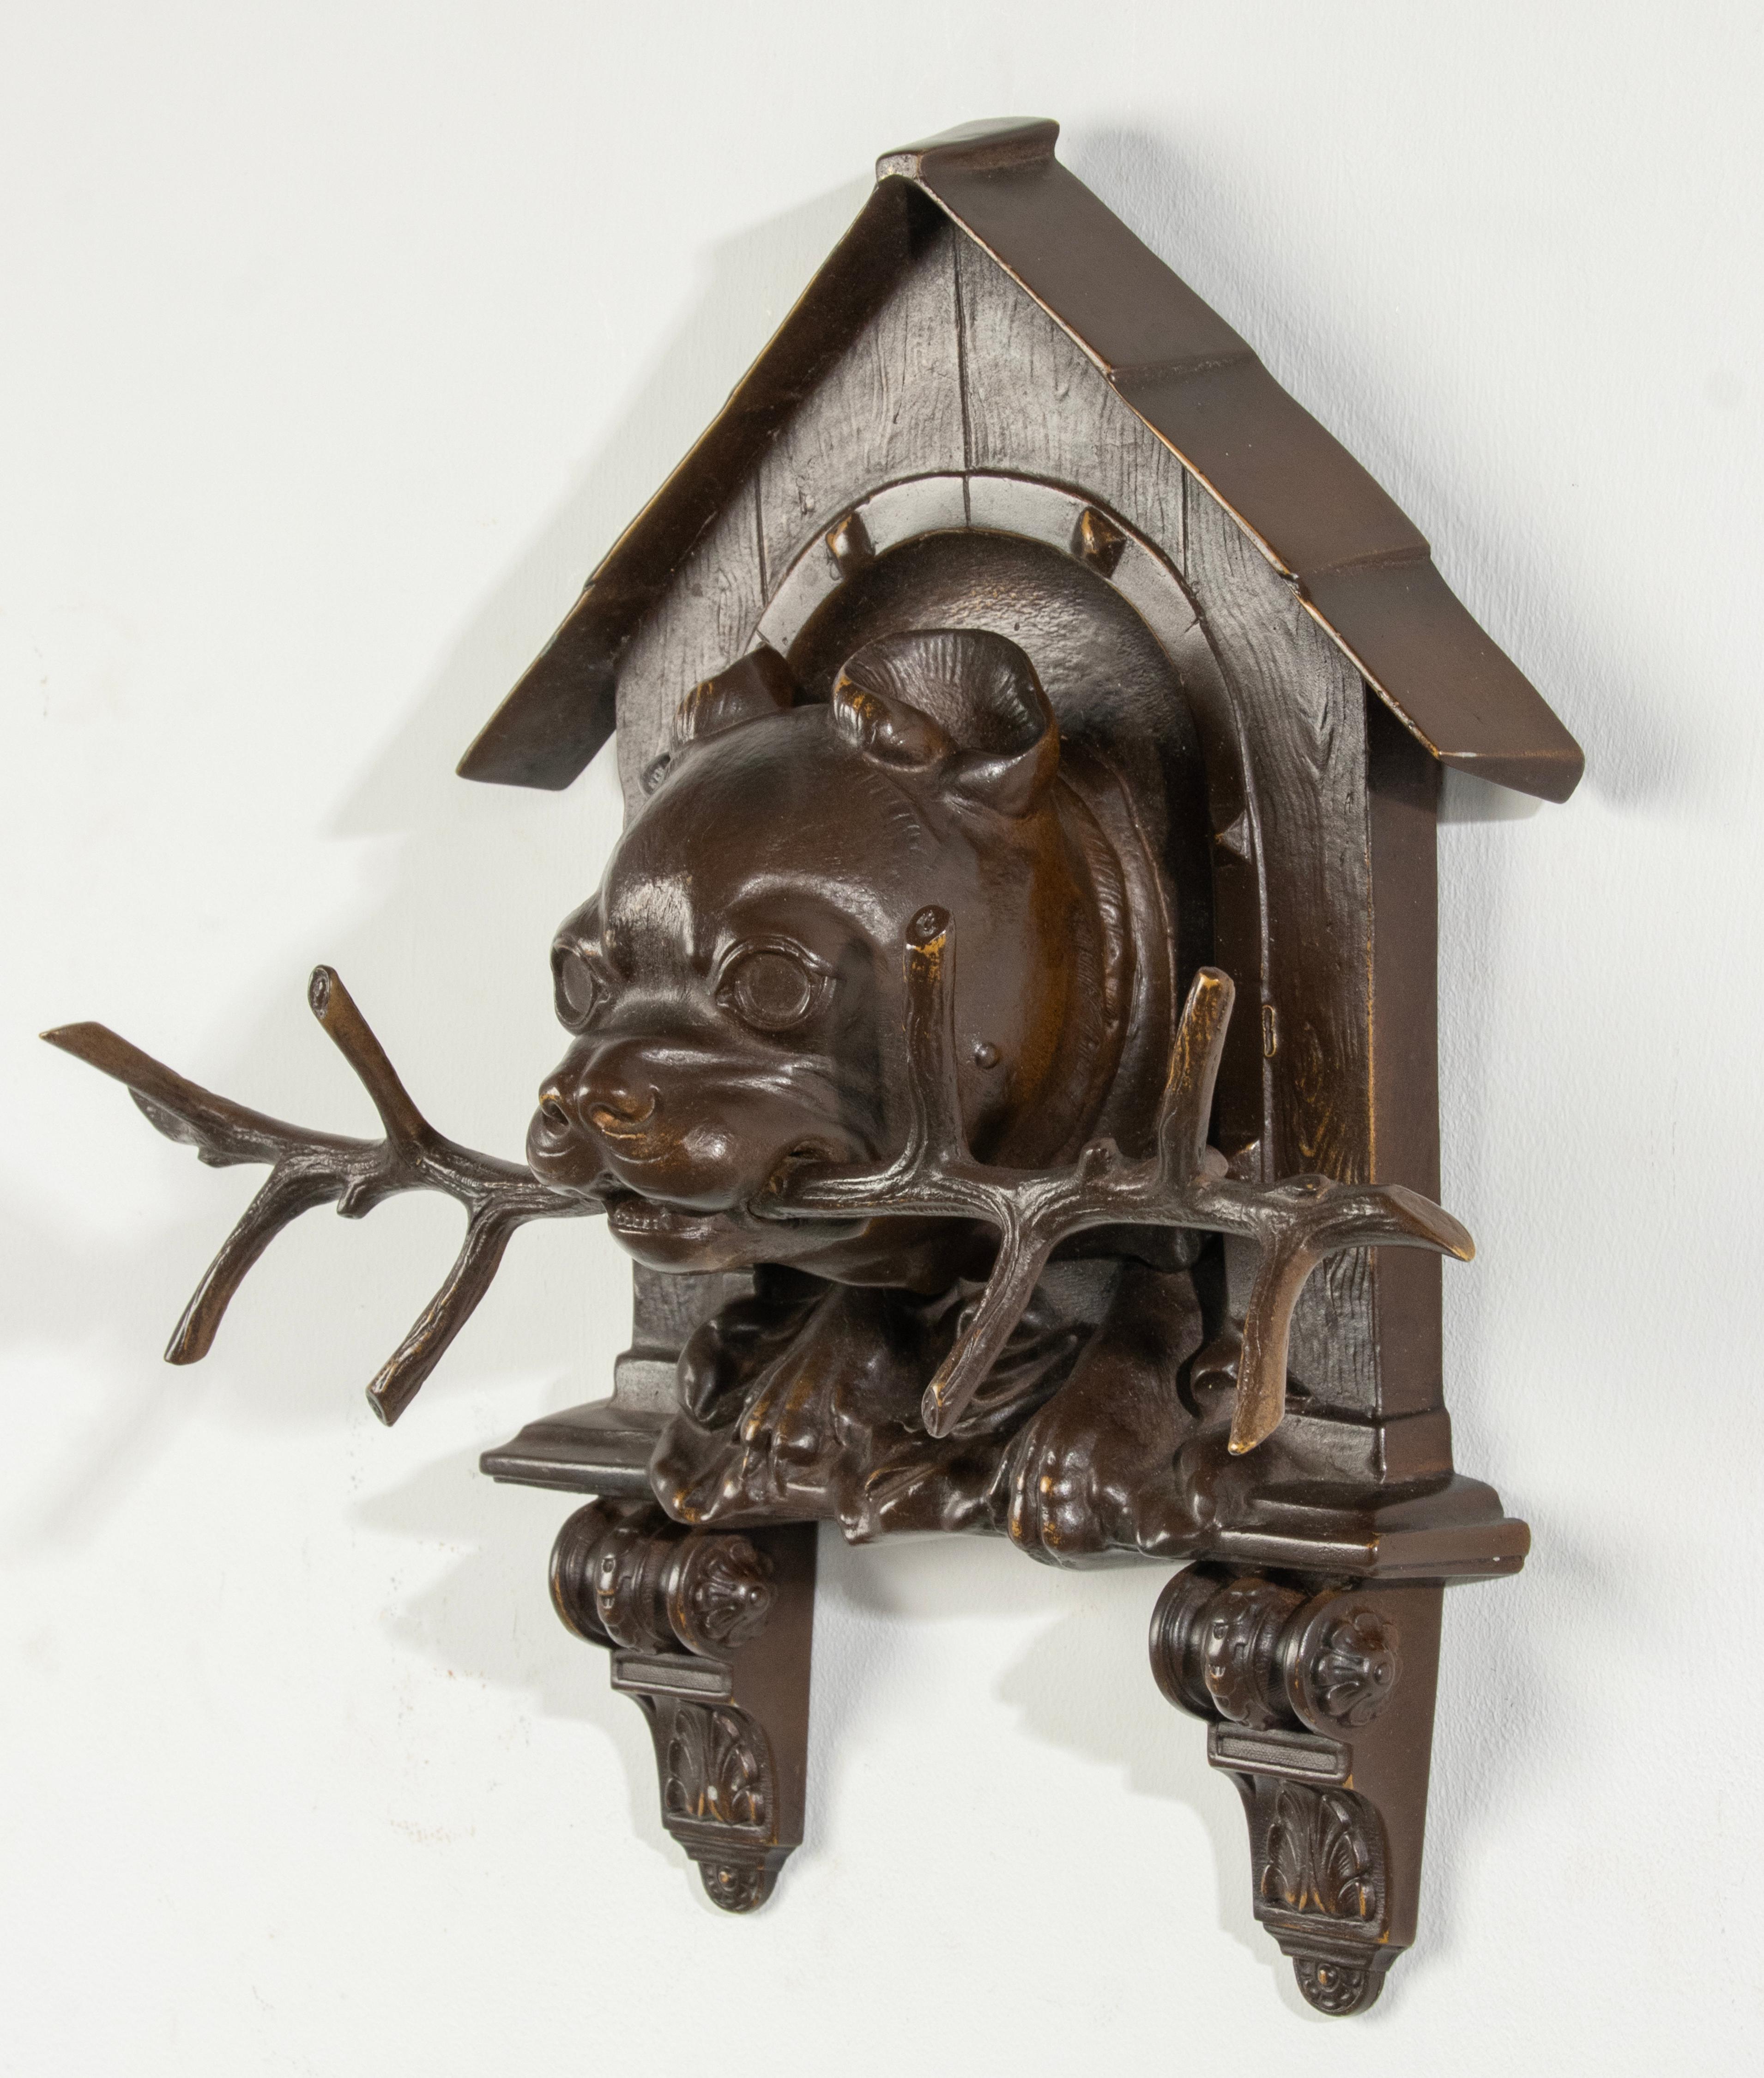 Une sculpture murale raffinée d'un Bulldog sortant d'une niche avec une branche dans la gueule. En bronze patiné brun. Avec des détails de moulage raffinés tels que le grain de bois de la niche en bois. Fabriqué en Allemagne dans le style de la